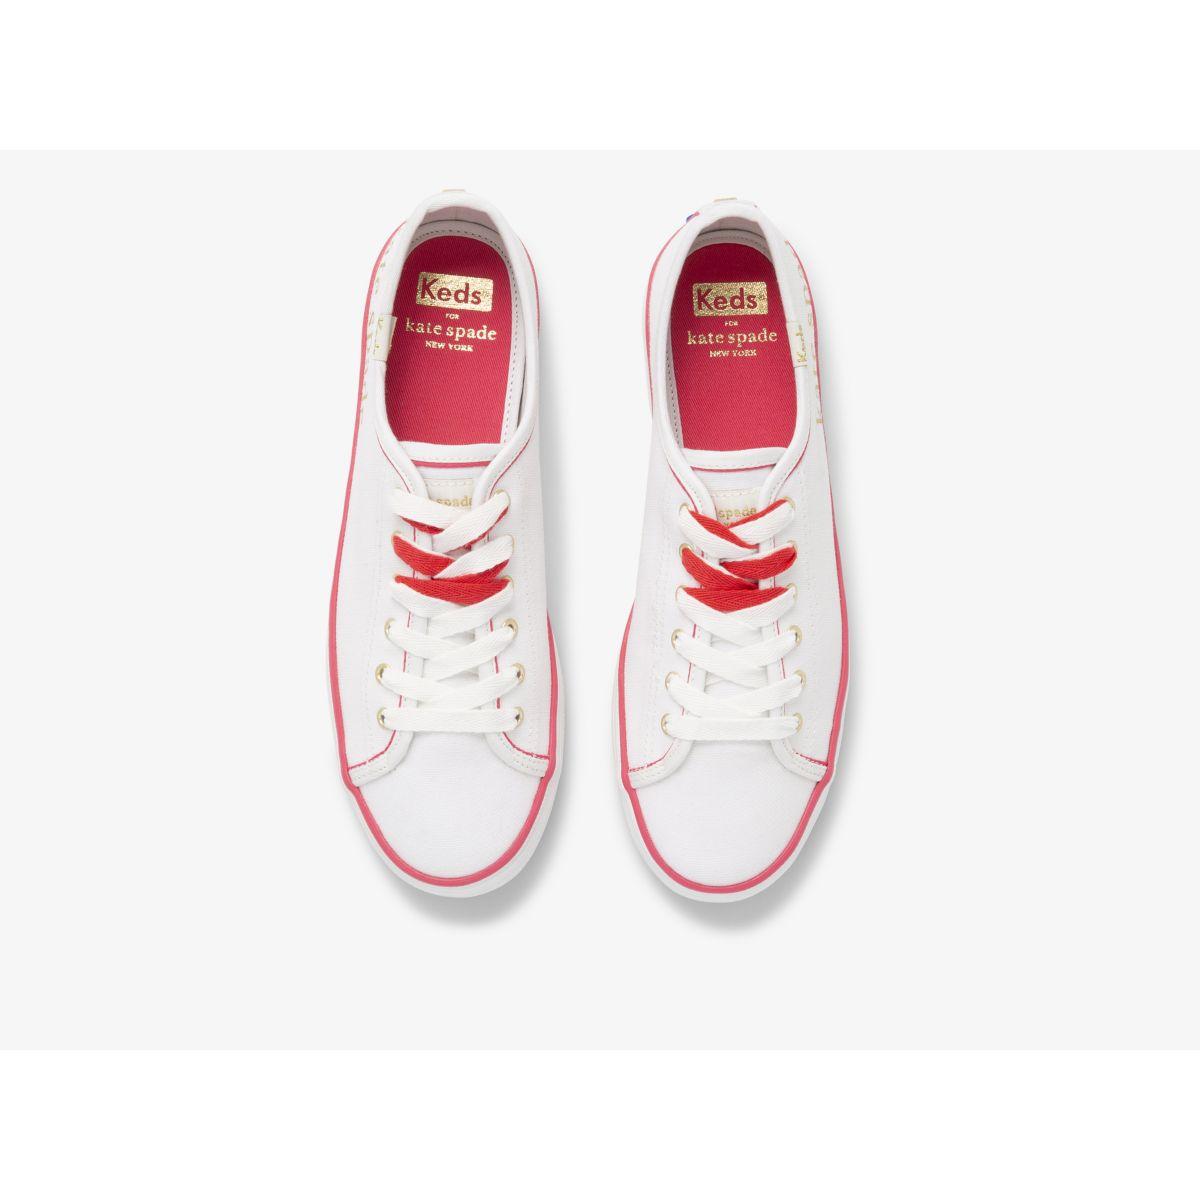 Keds Keds X Kate Spade New York Kickstart Foil Logo Sneaker in White | Lyst